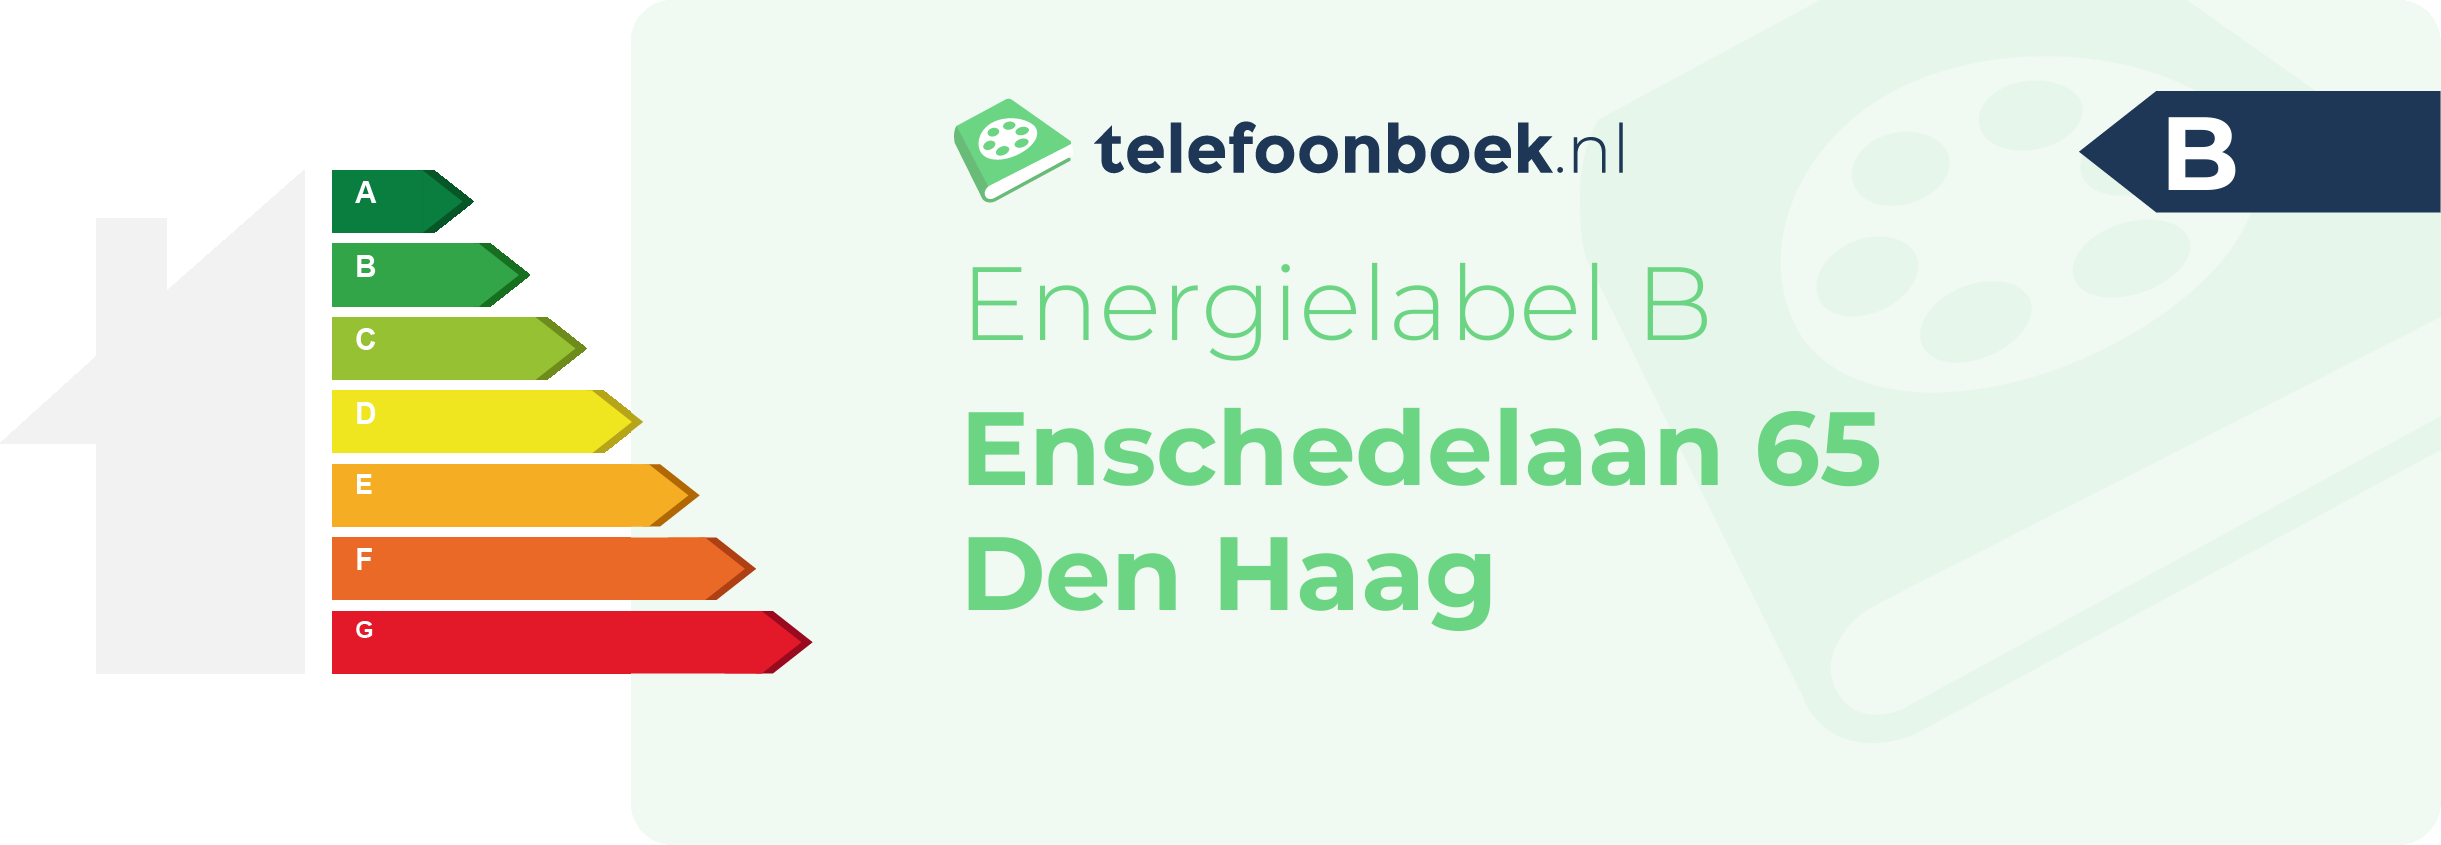 Energielabel Enschedelaan 65 Den Haag